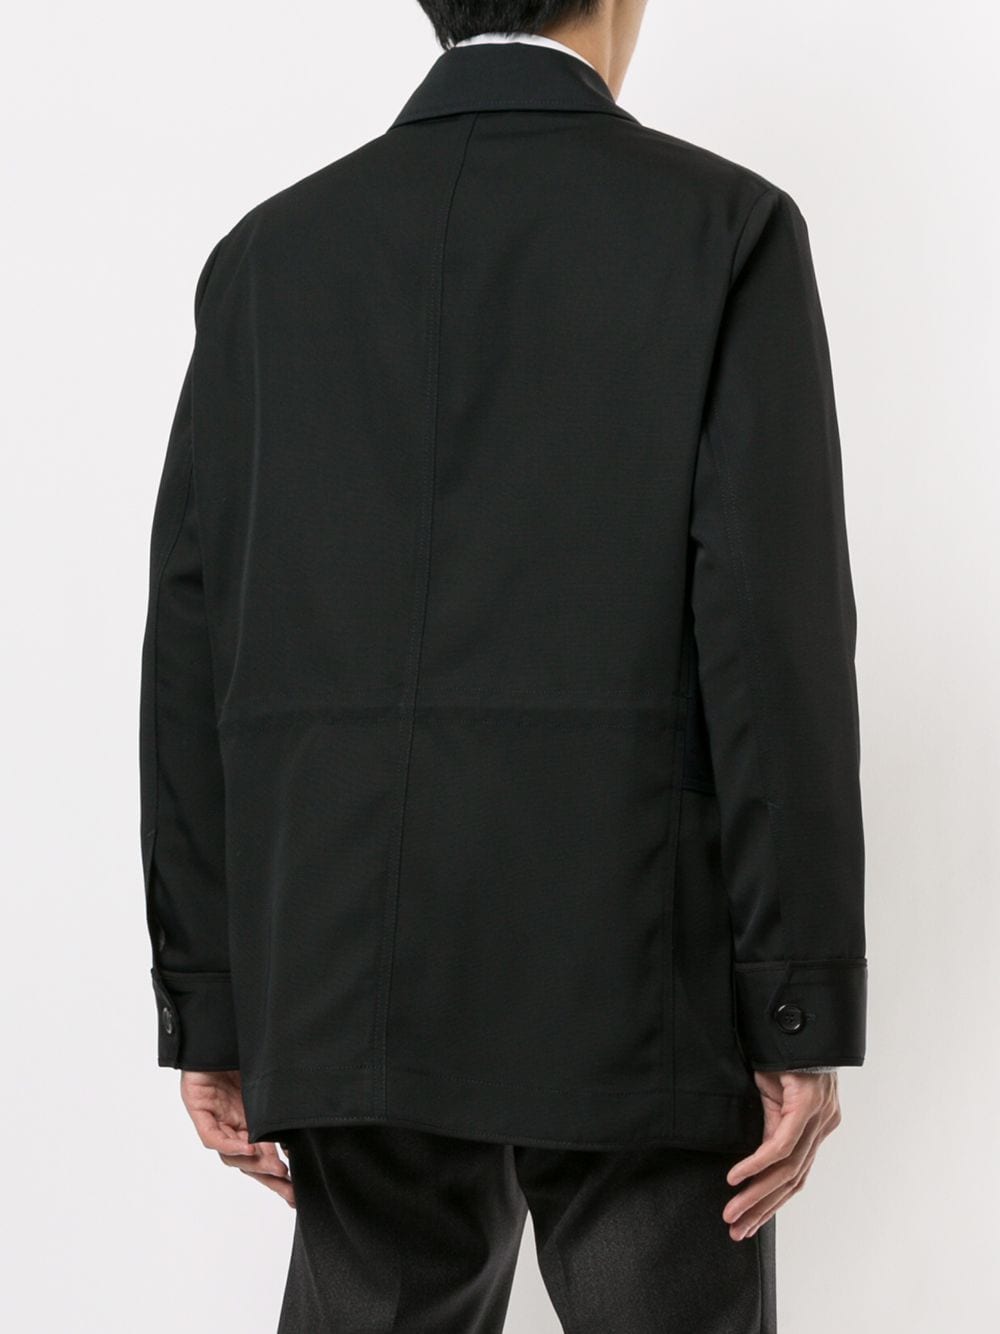 фото Cerruti 1881 легкая куртка в стиле колор-блок